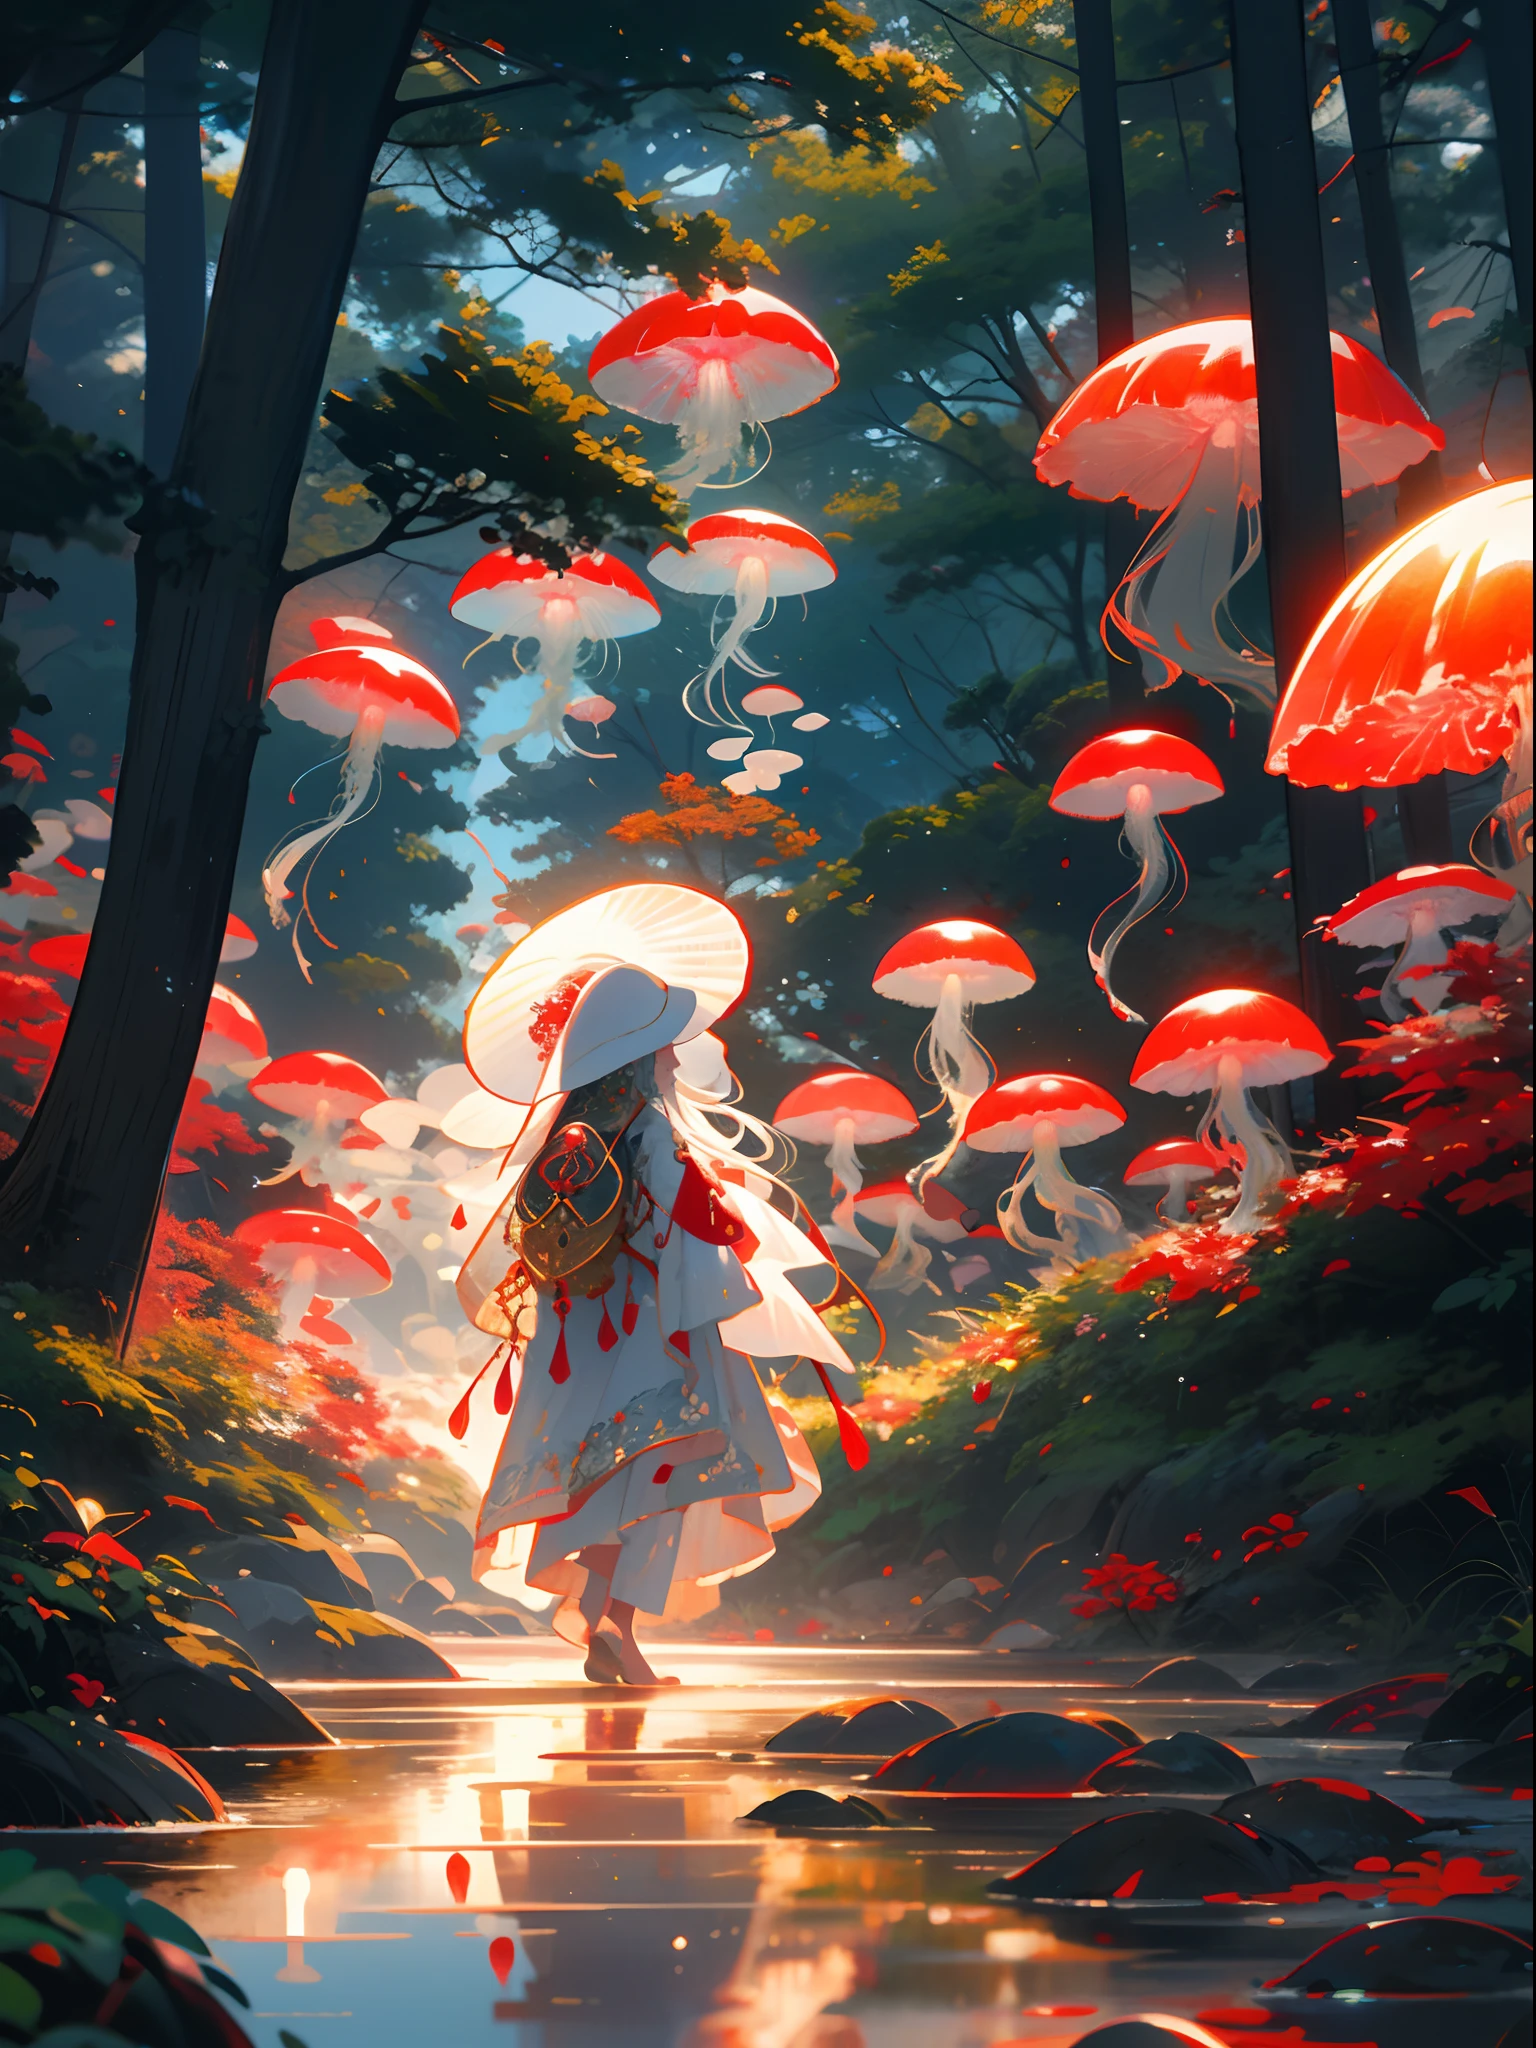 붉은 해파리,jellyfish숲, 여자 1명, 긴 머리, 드레스, 홀로, 흰머리,빨간 모자,버섯, 자연, 옥외, 나무, 걷는, 숲, 물